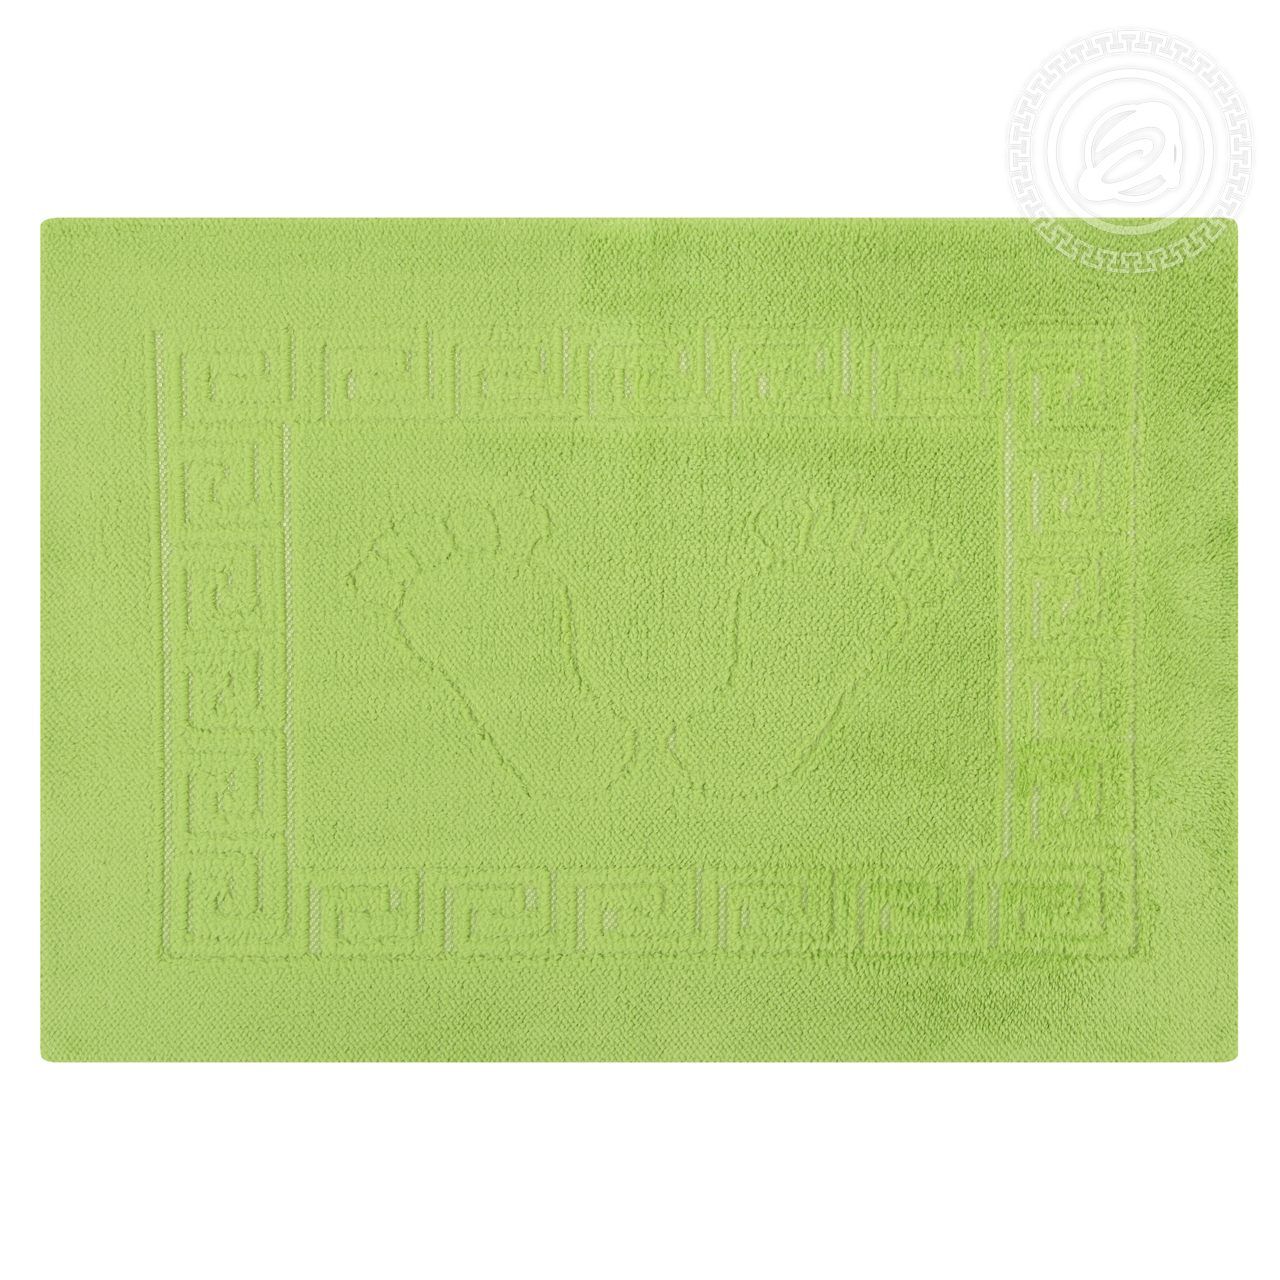 Коврик на резиновой основе НОЖКИ (зеленый) Ножки АртД резин.45*65